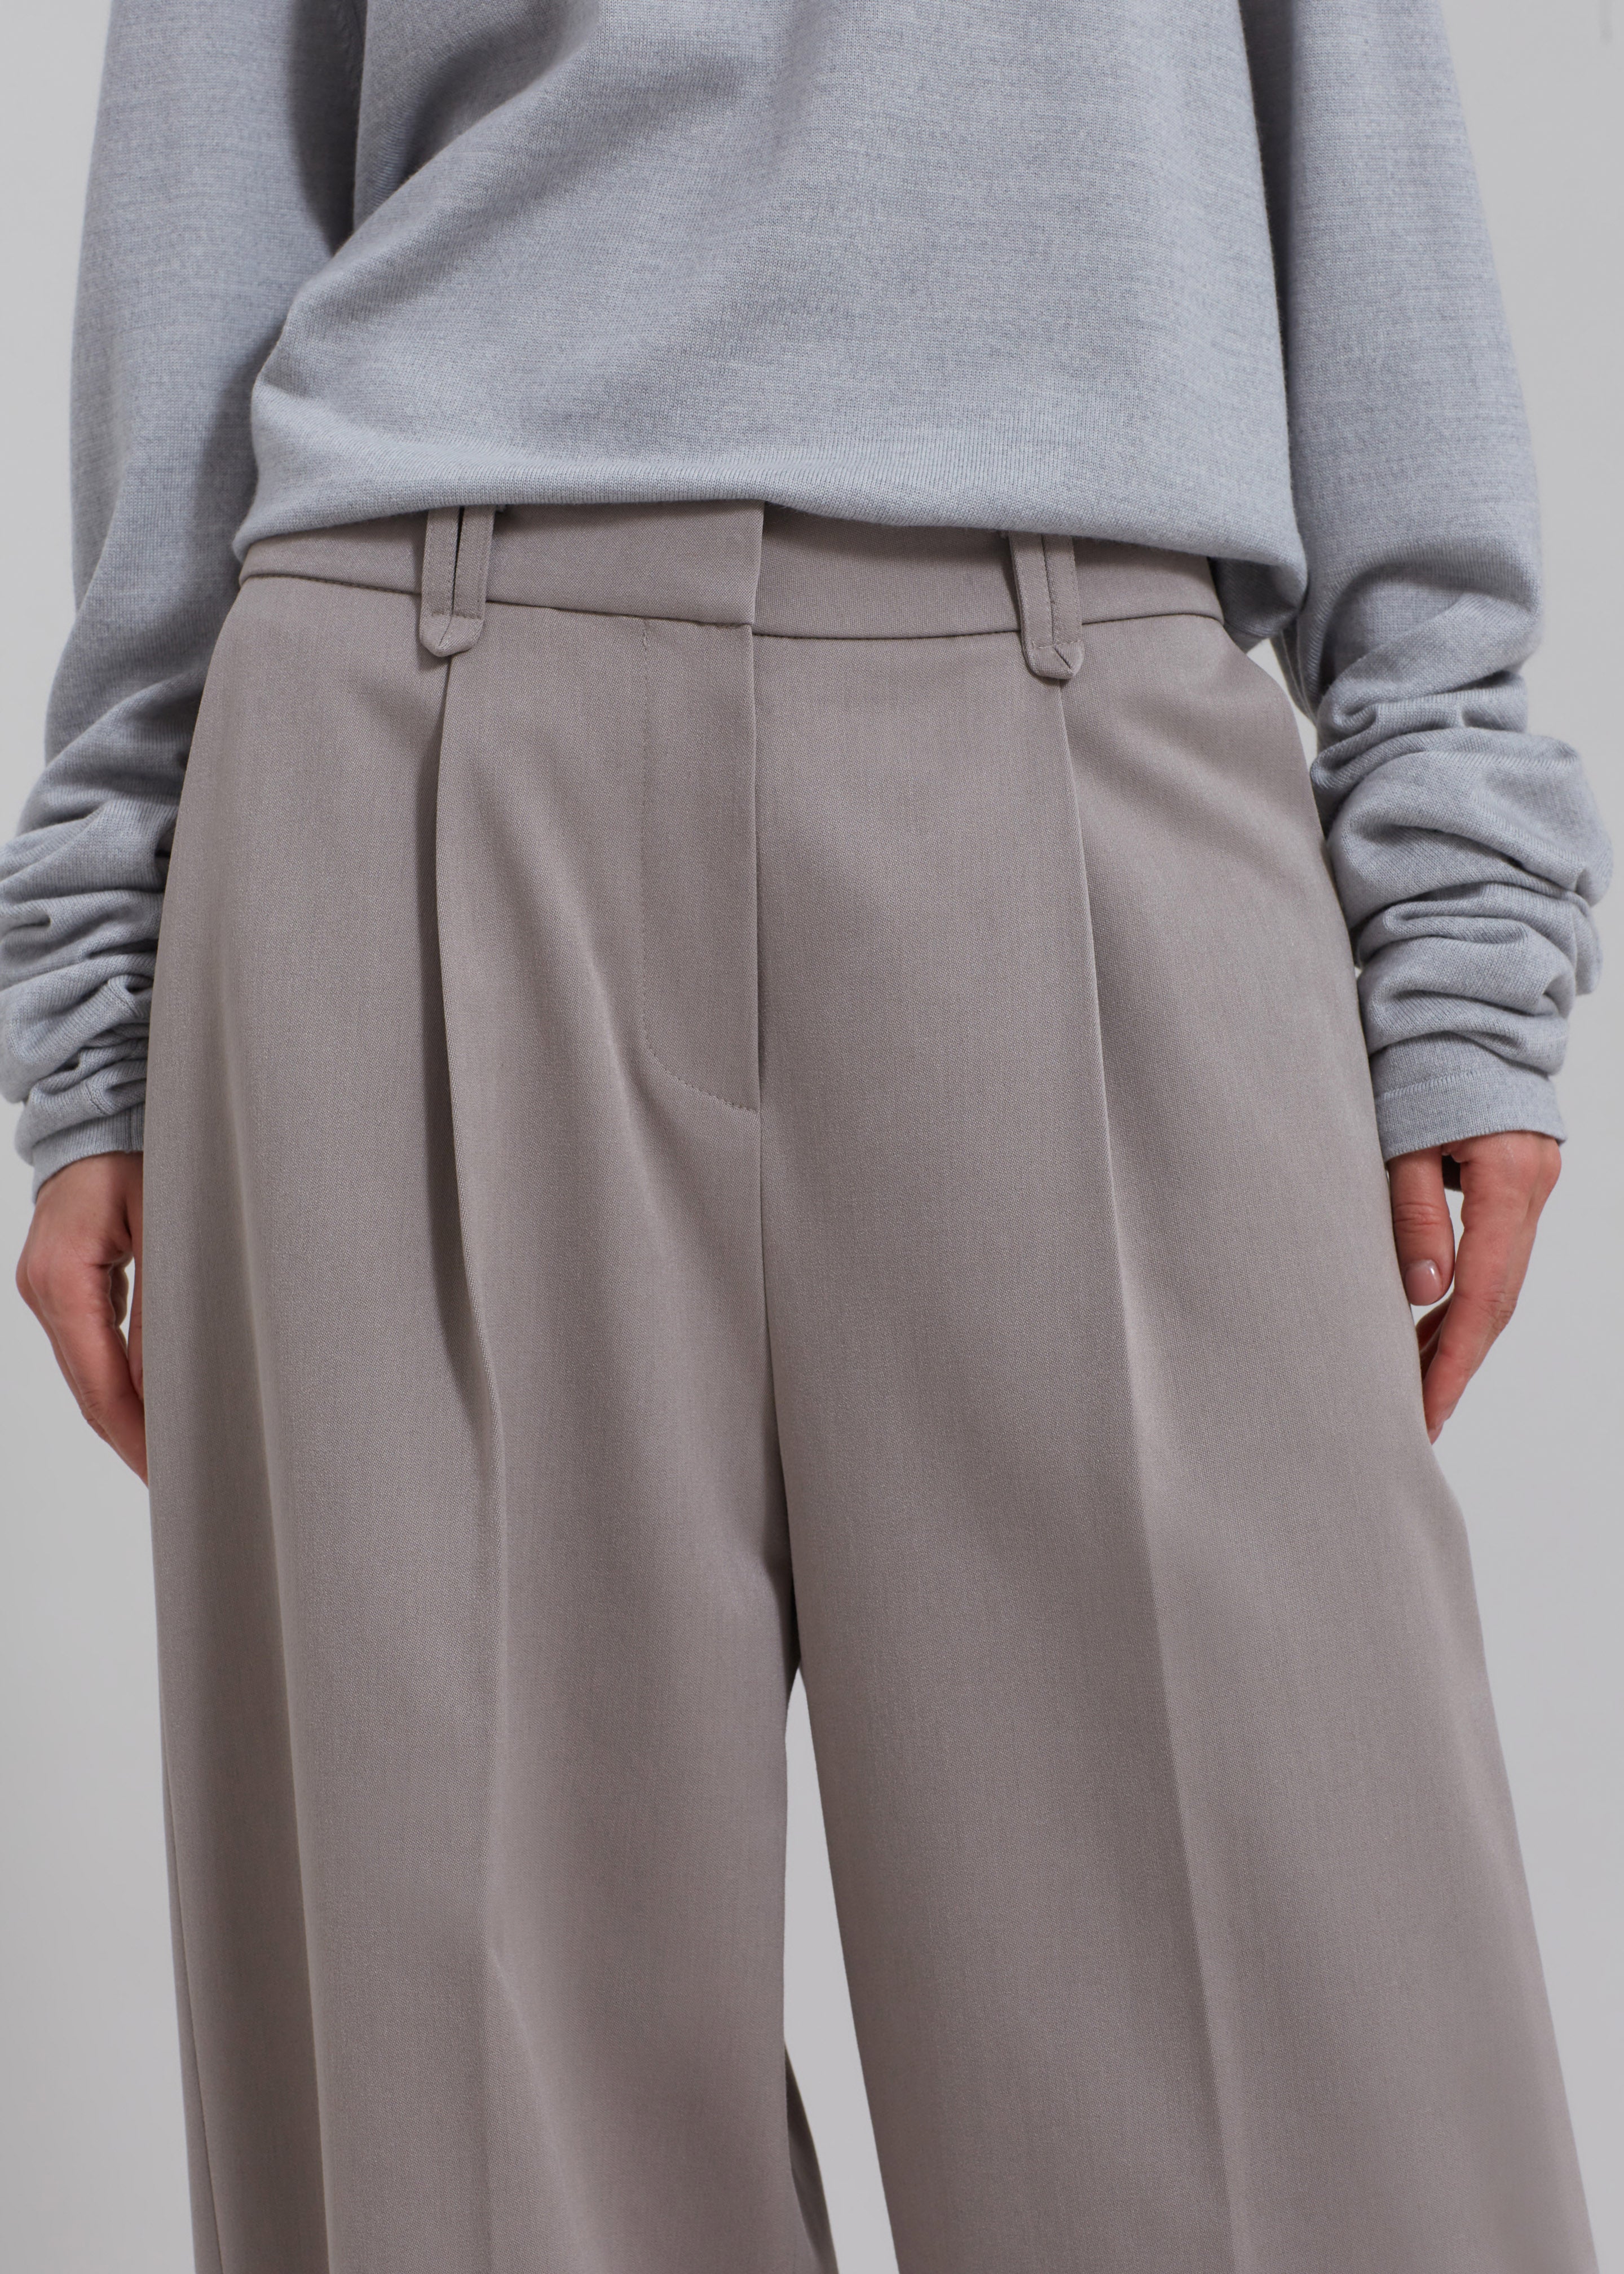 Adair Trousers - Grey - 3